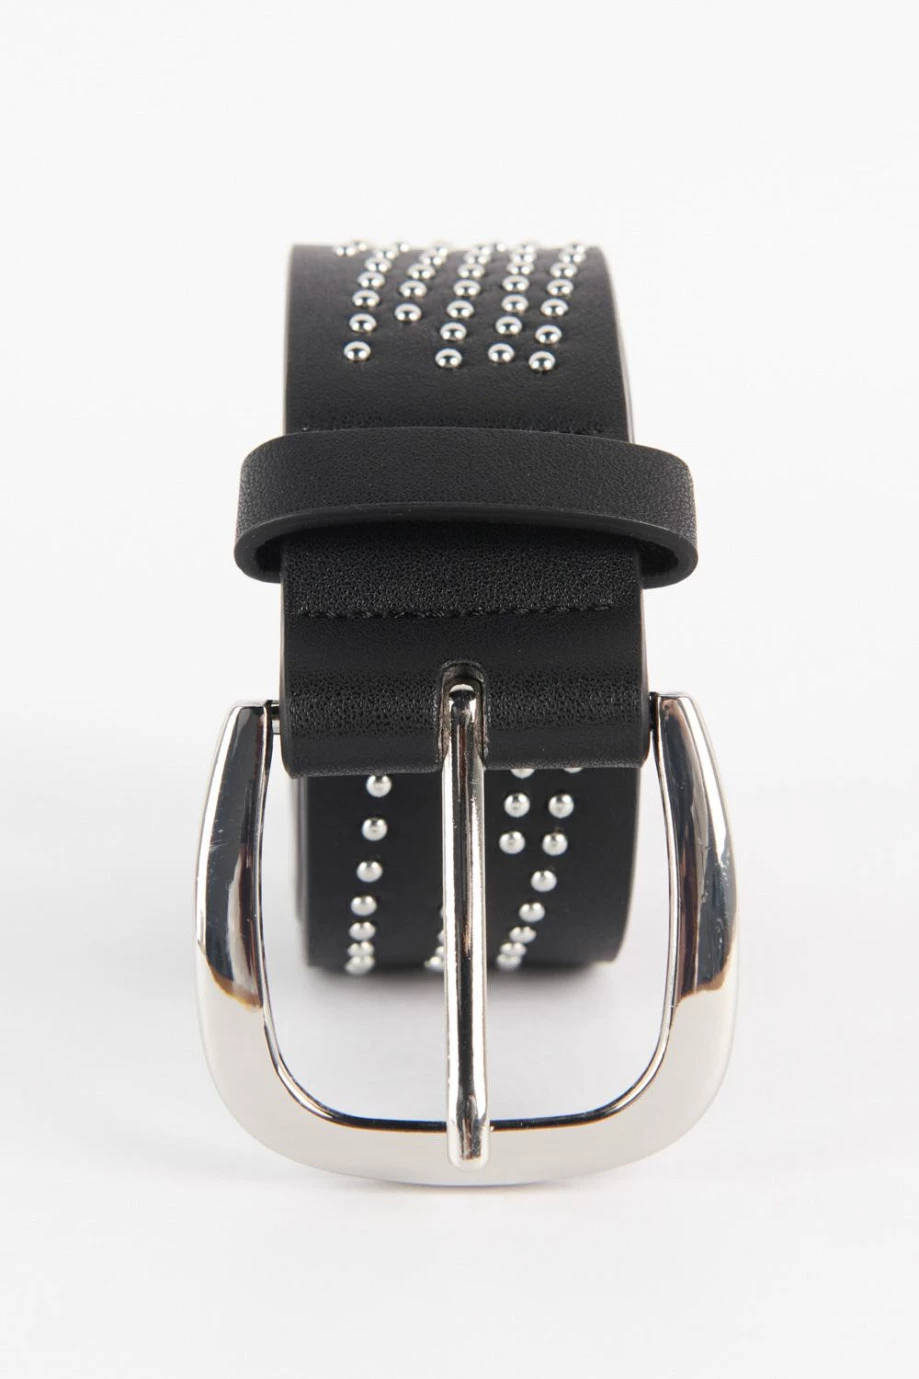 Cinturón negro con hebilla cuadrada y puntos metálicos decorativos